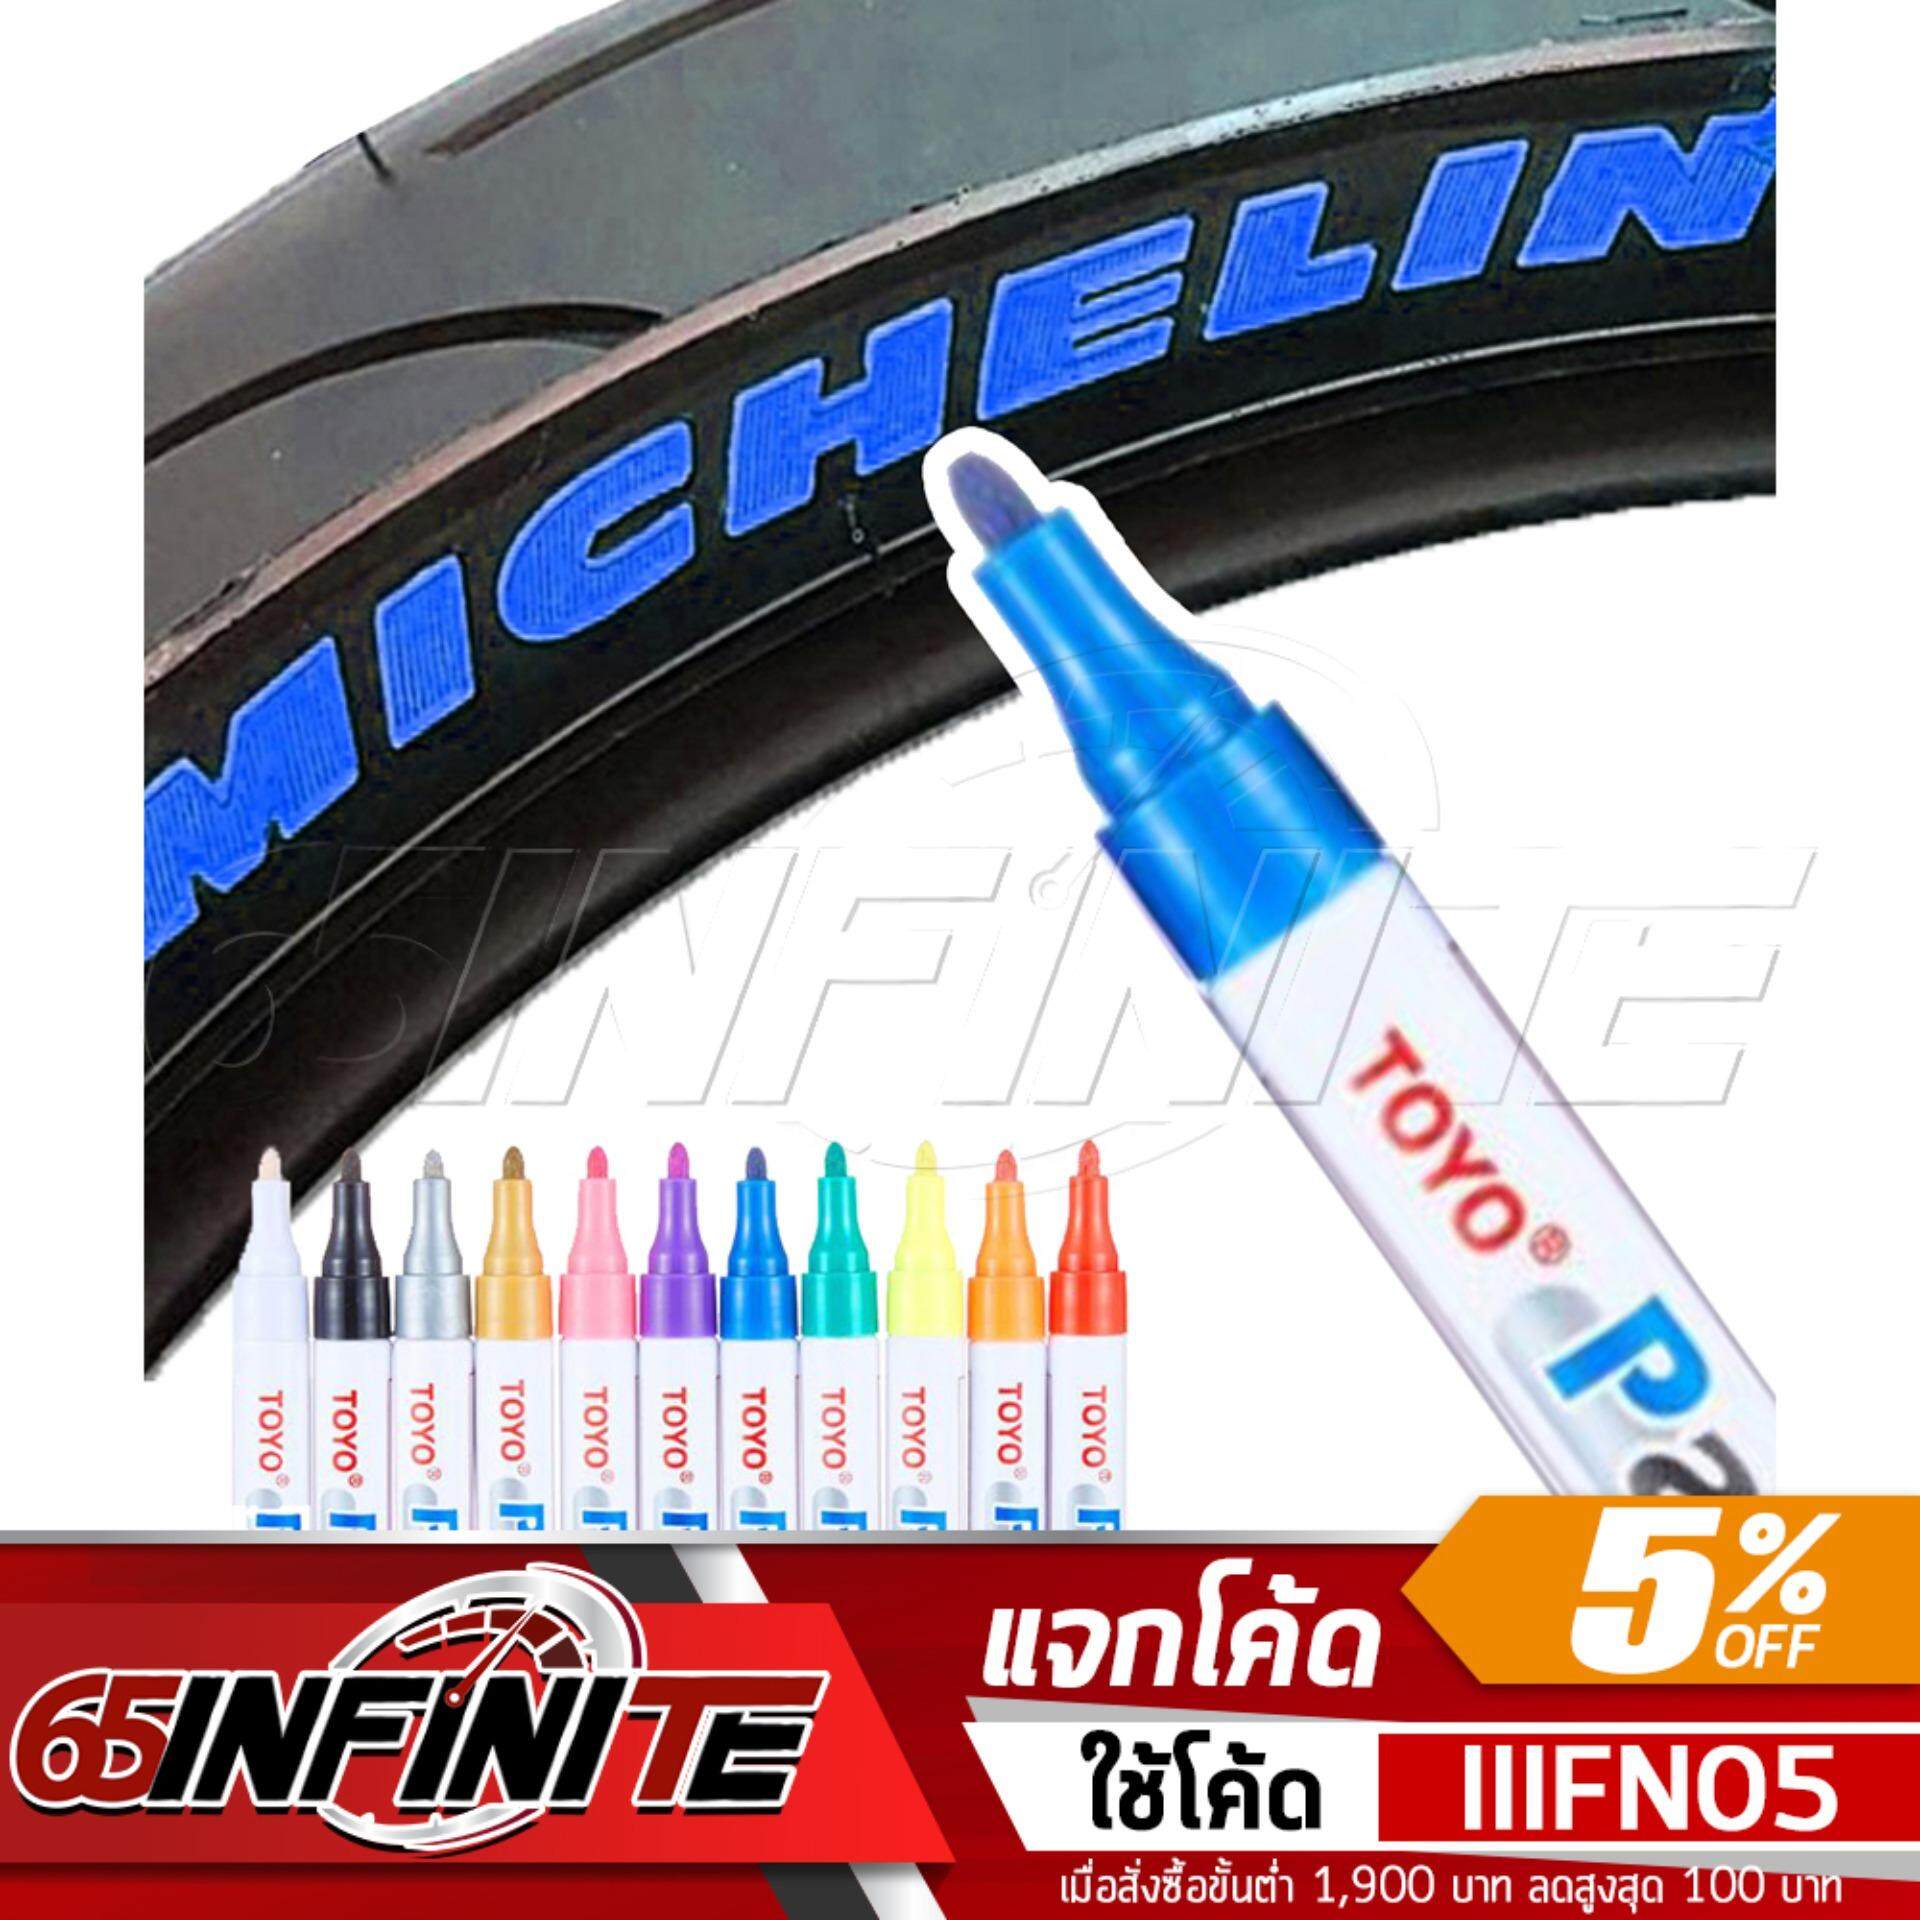 65Infinte TOYO Paint (สีน้ำเงิน) ปากกาเขียนยาง ปากกาเขียนล้อ แต้มแม็กซ์ ยางรถยนต์ ล้อรถยนต์ ของแท้จากญี่ปุ่น 100%